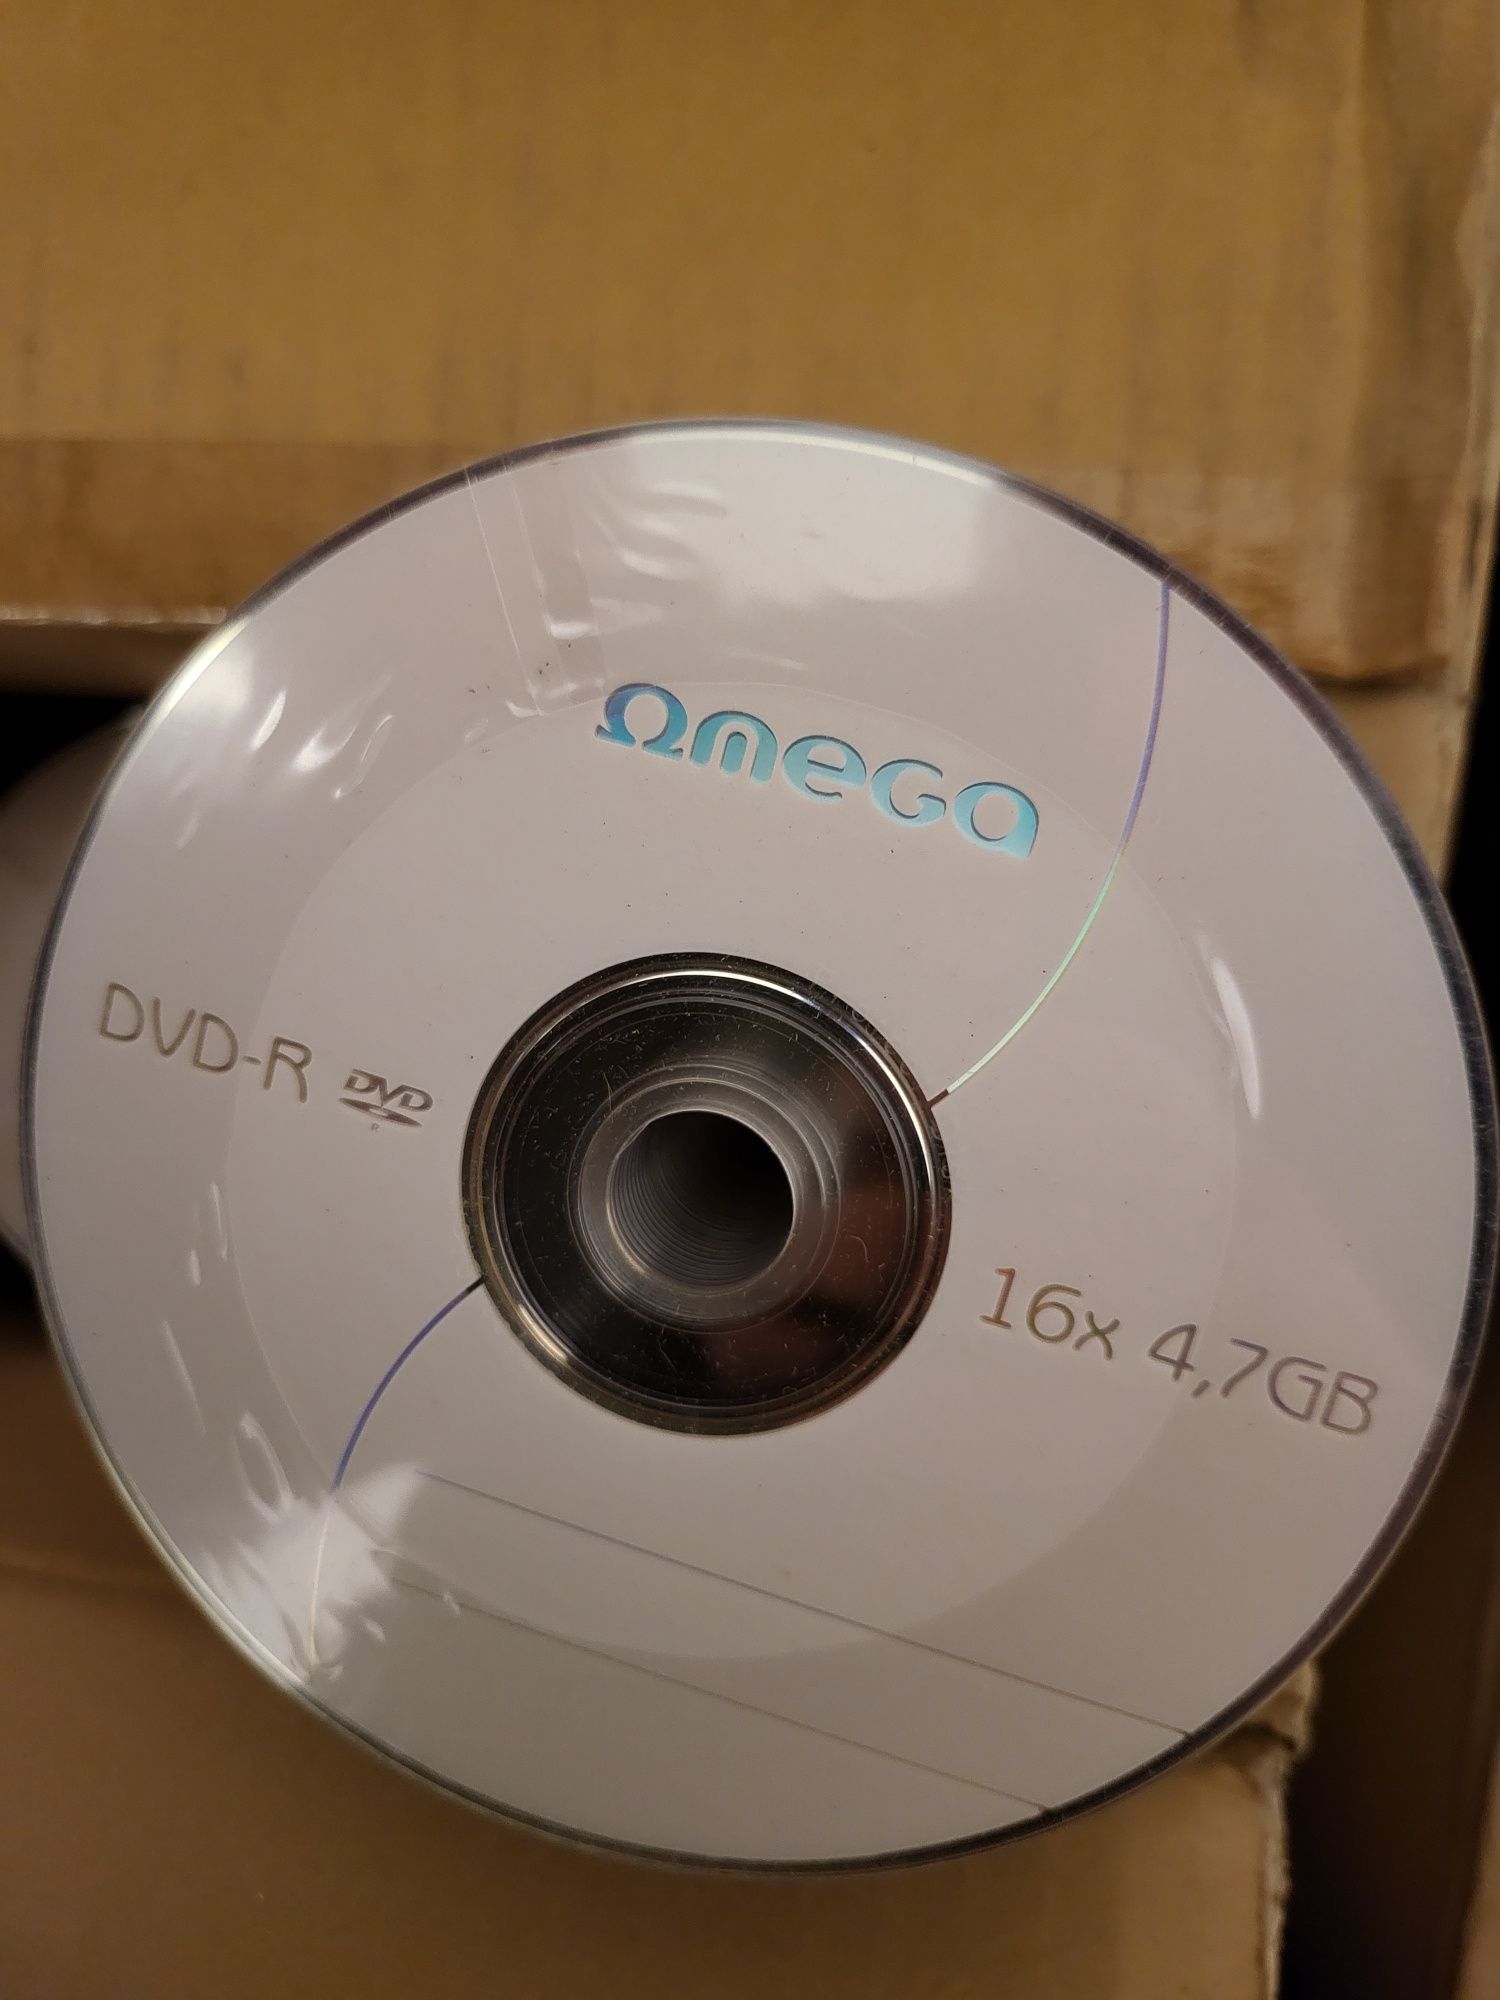 DVD-R OMEGA,preț pe  bax 600 buc (12x50b) 16X, 4.7 GB, 50 buc/set